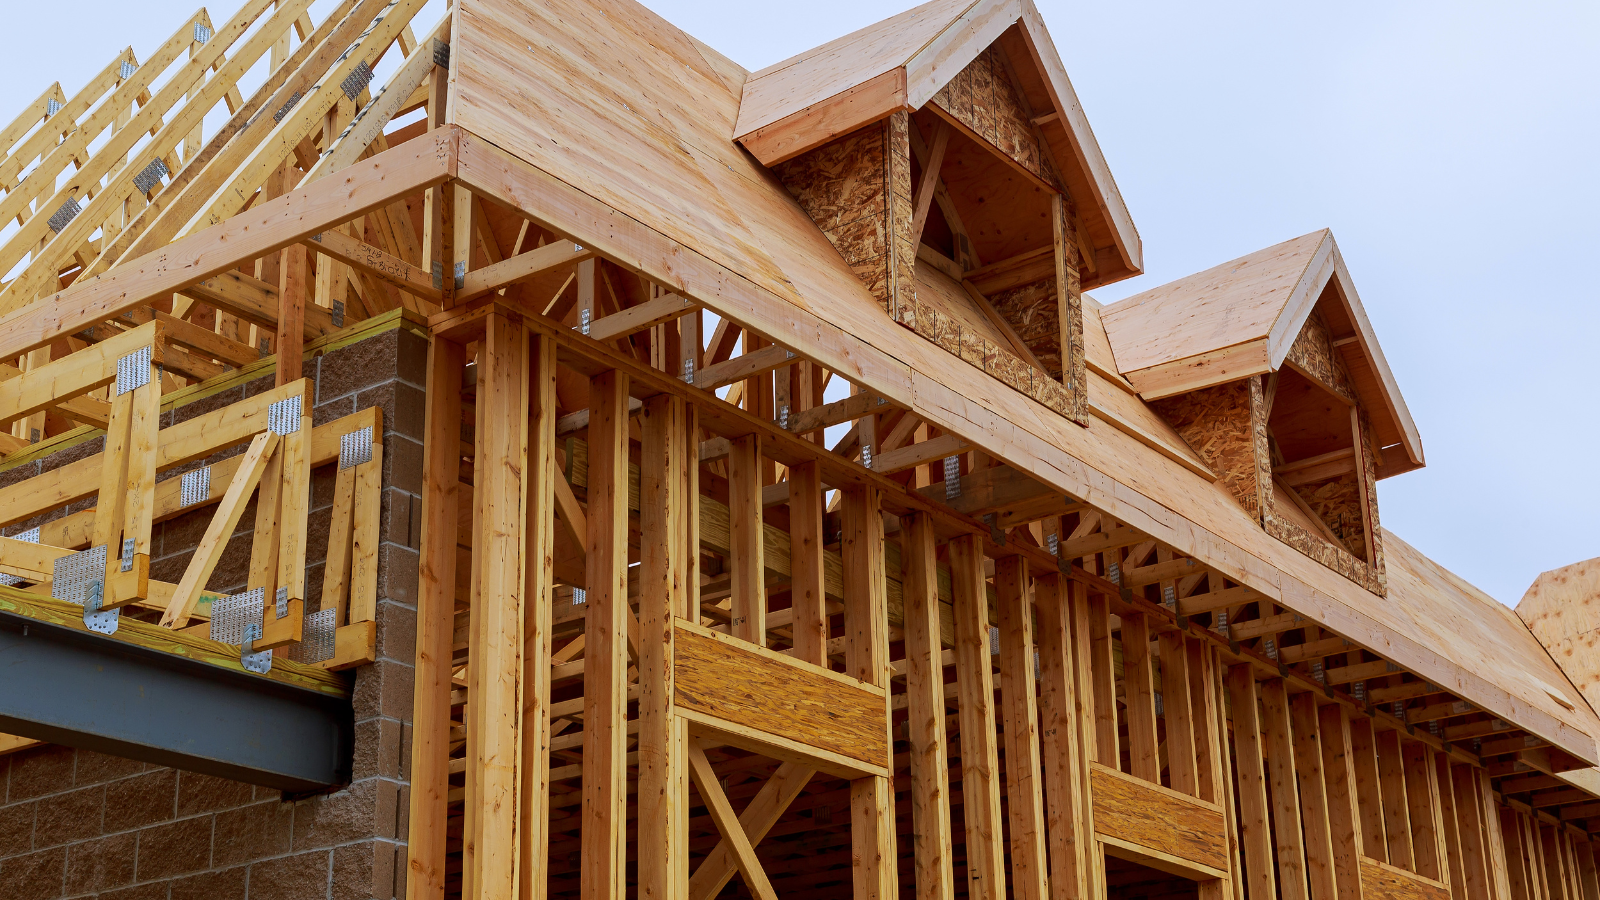 Modular methods of construction – a timber new build